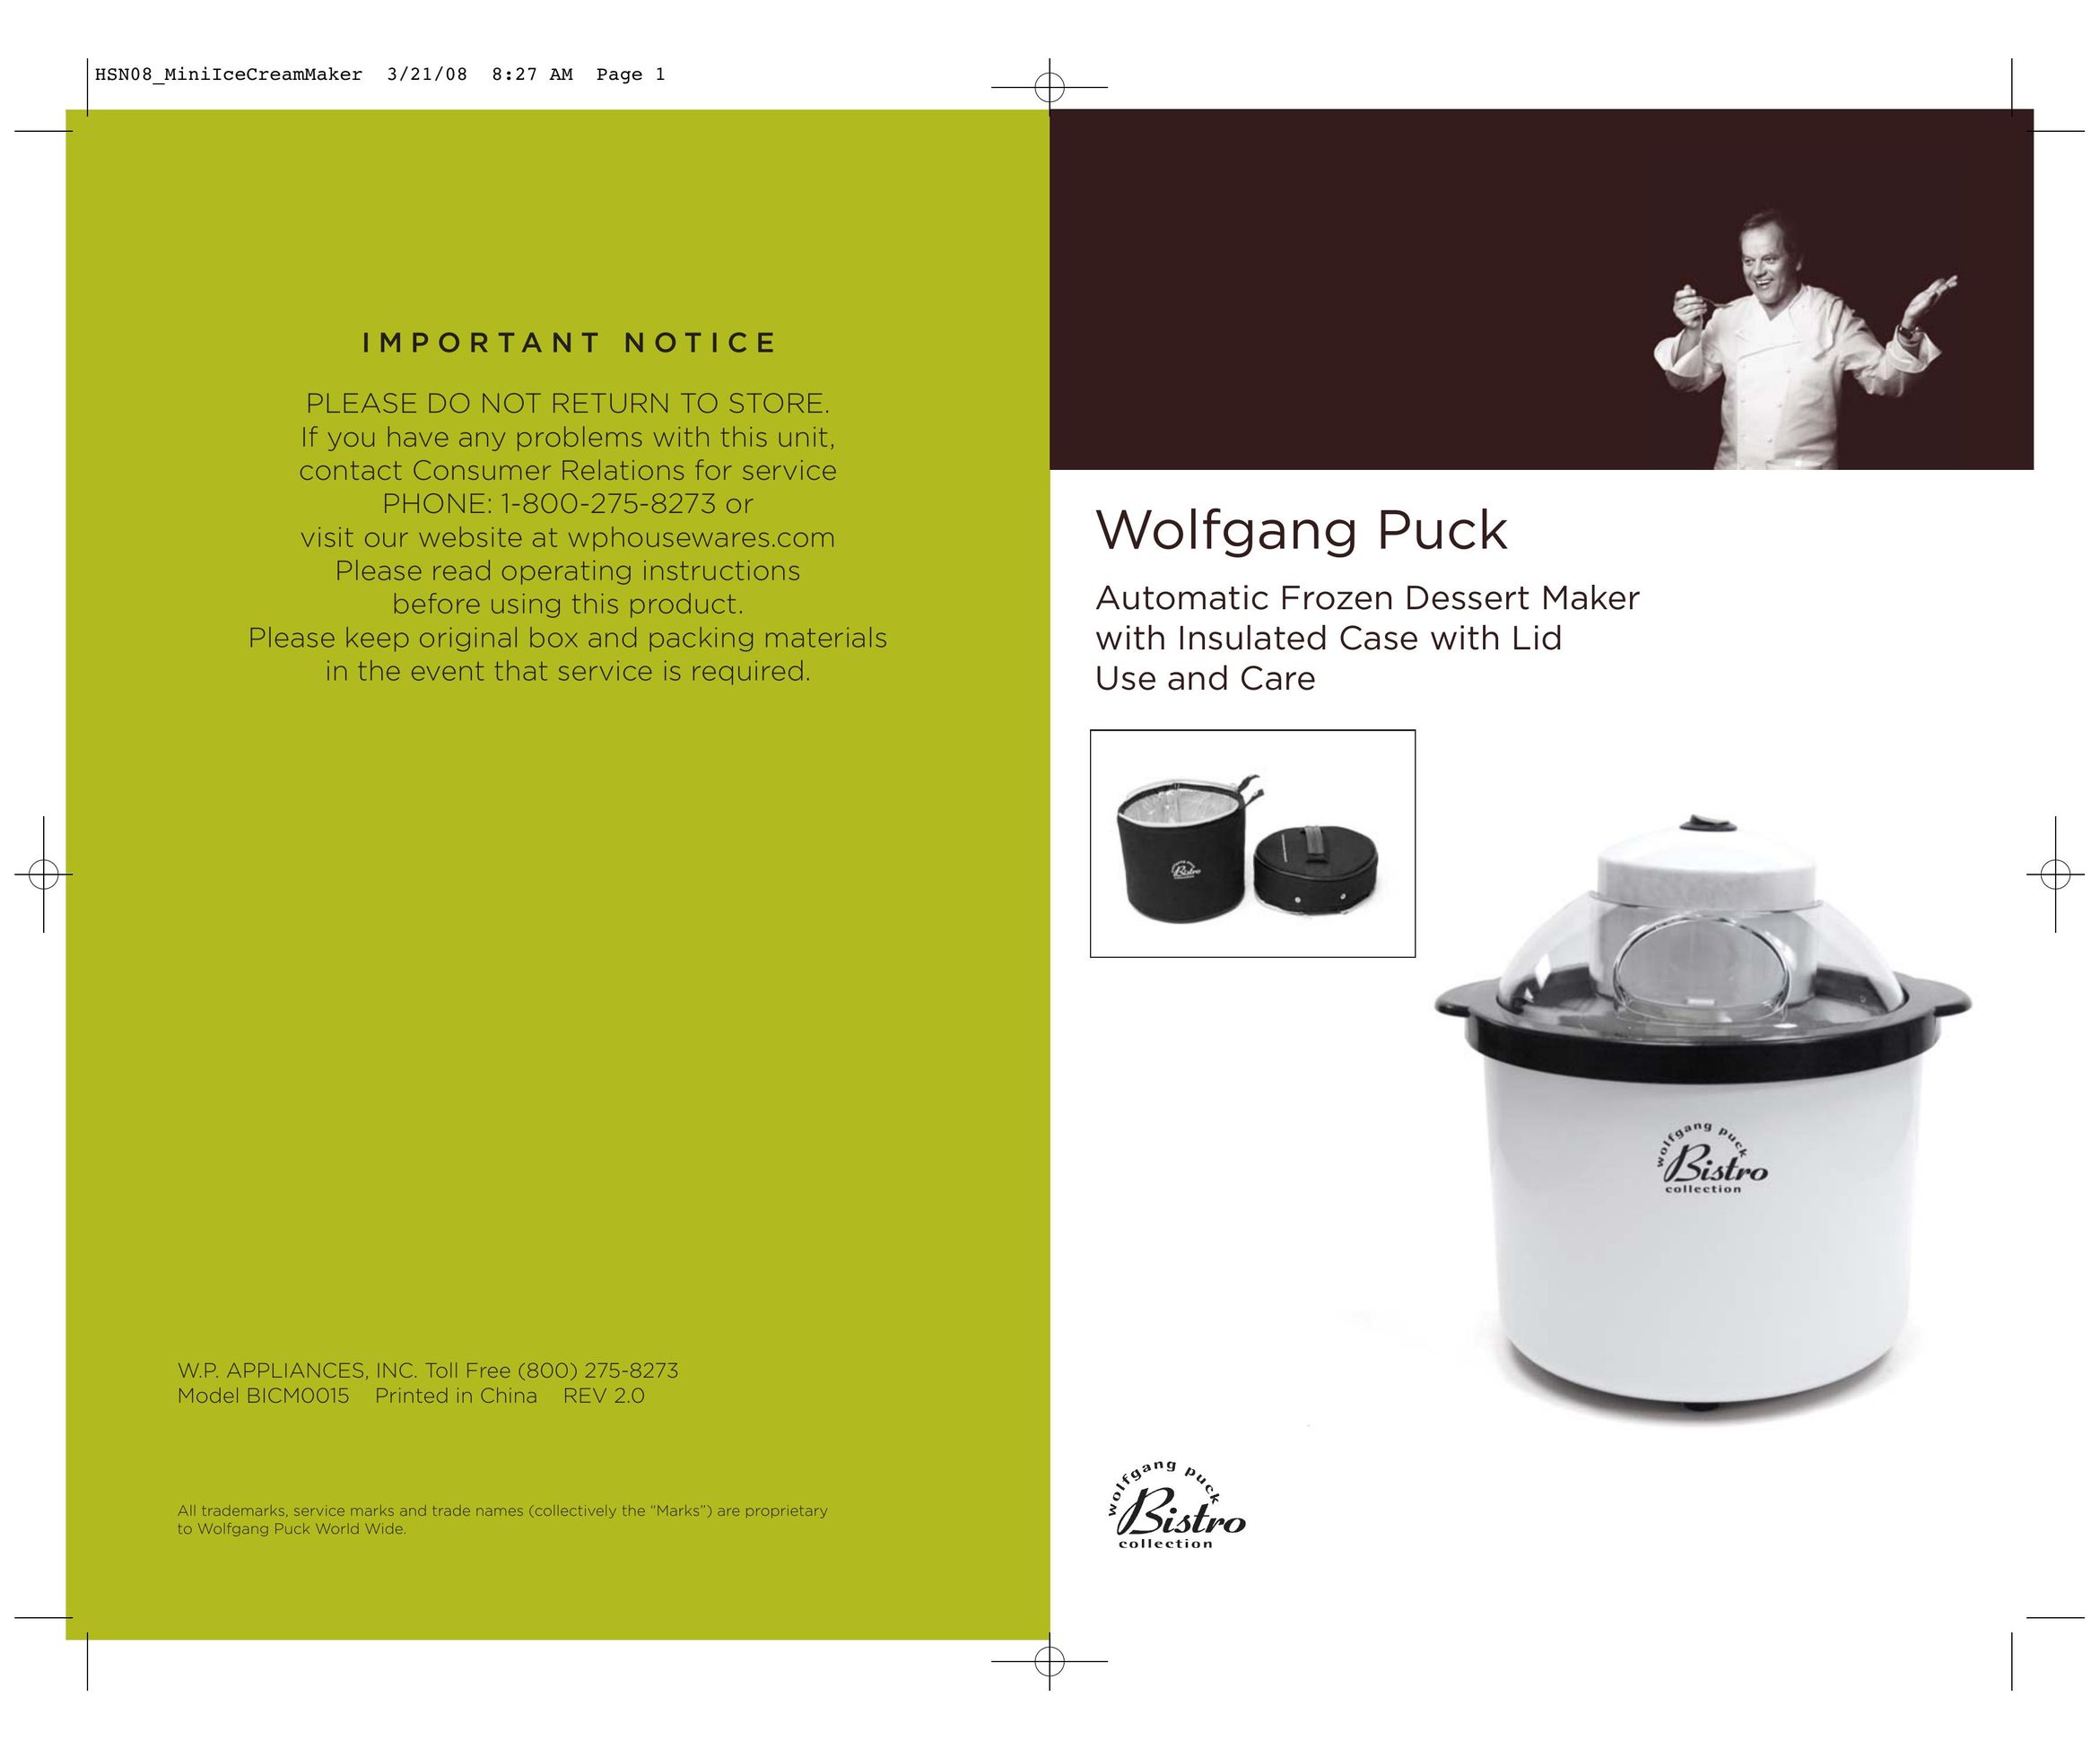 Wolfgang Puck BICM0015 Frozen Dessert Maker User Manual